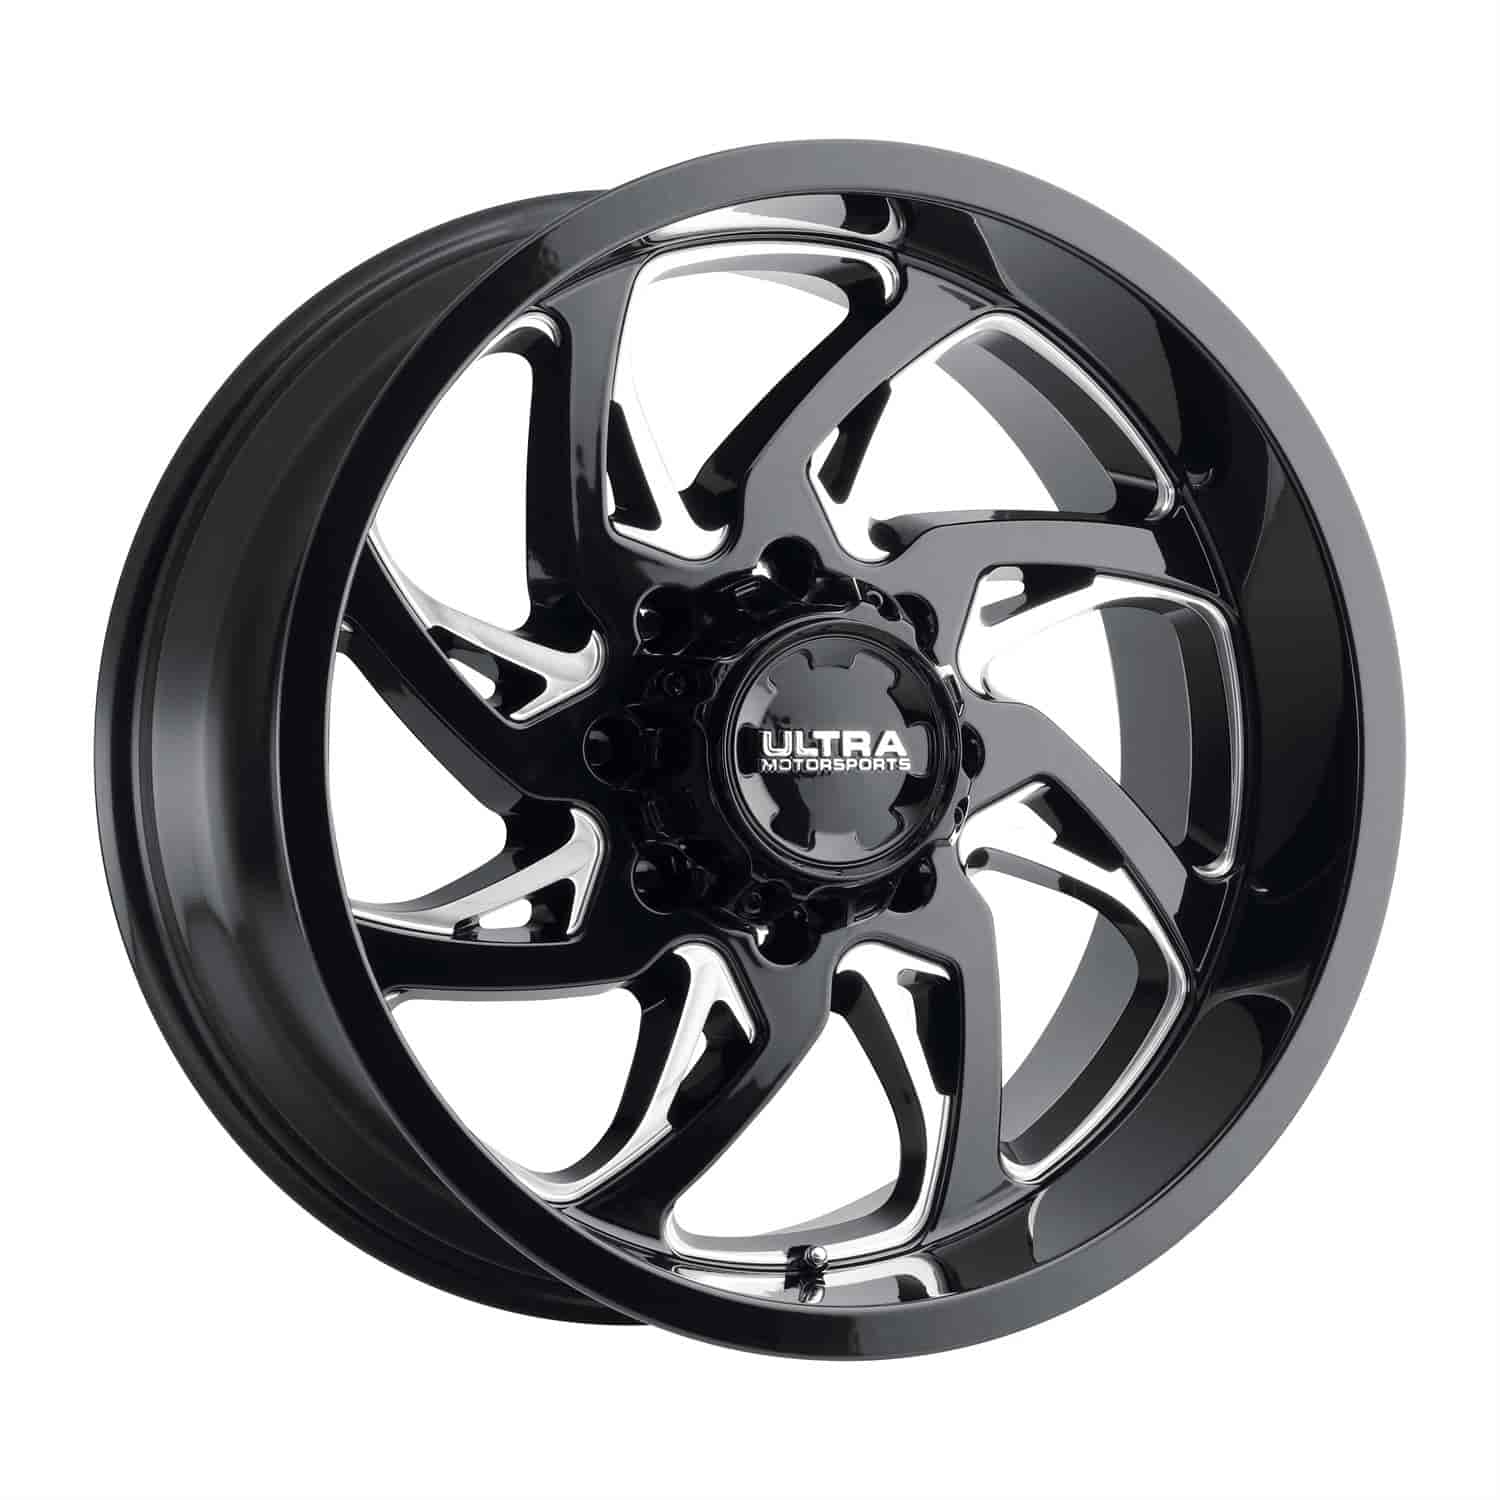 230-Series Villain Wheel, Size: 24x12", Bolt Pattern: 6x5.5"/6x135 mm [Gloss Black w/Milled Accents]